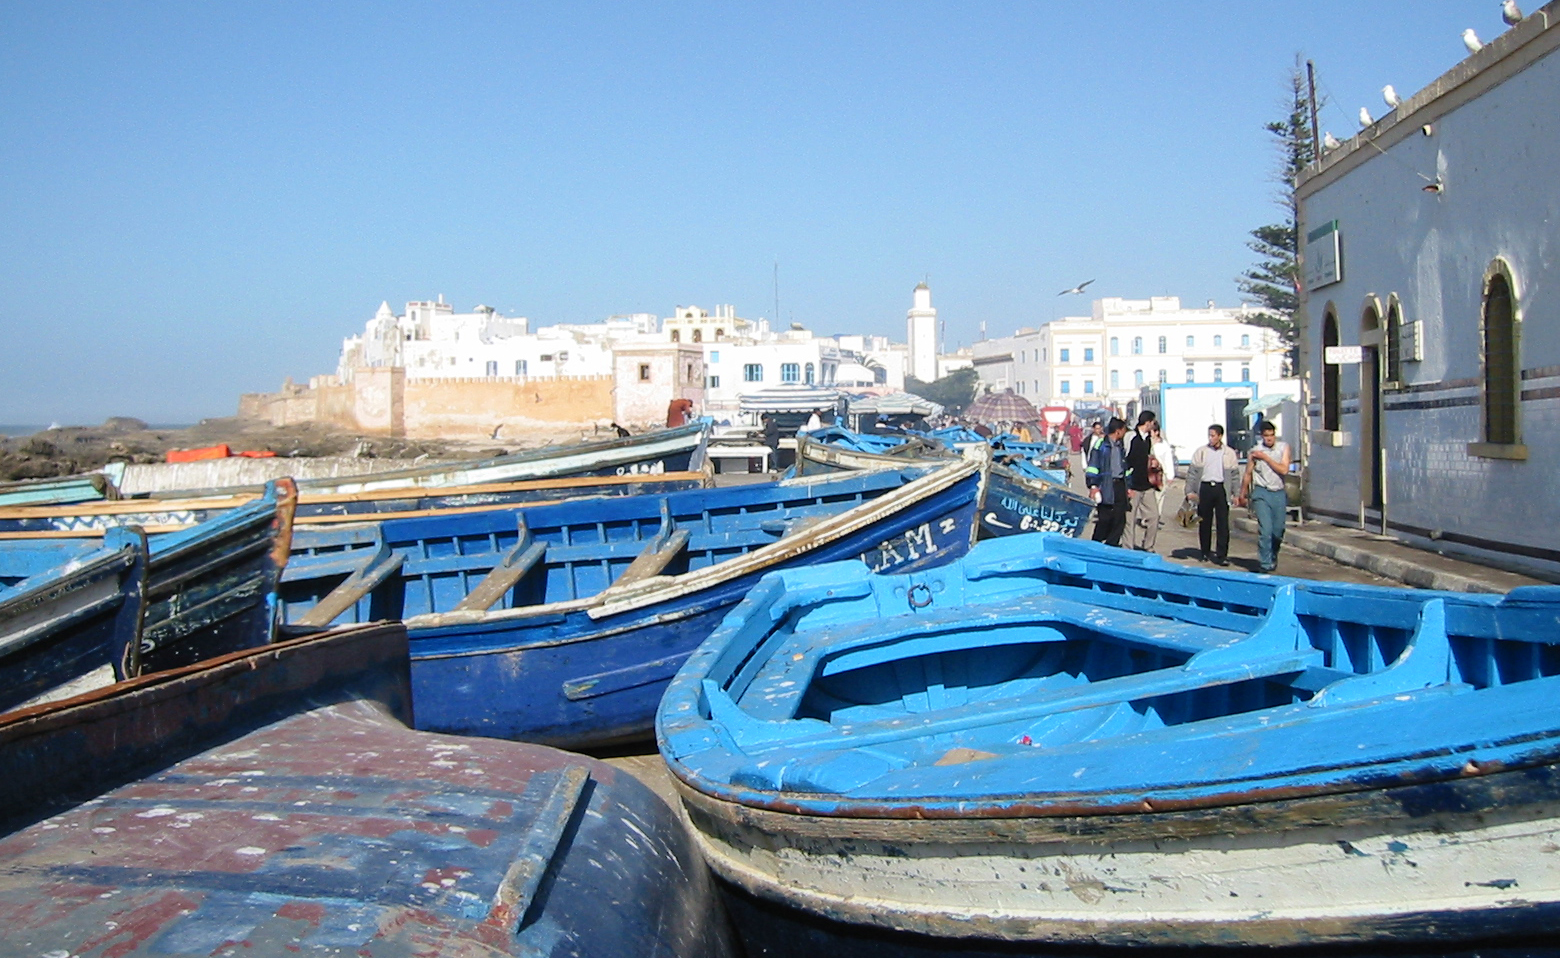 De blå båtene er typiske for Essaouira. Gamlebyen og medinaen i bakgrunnen.